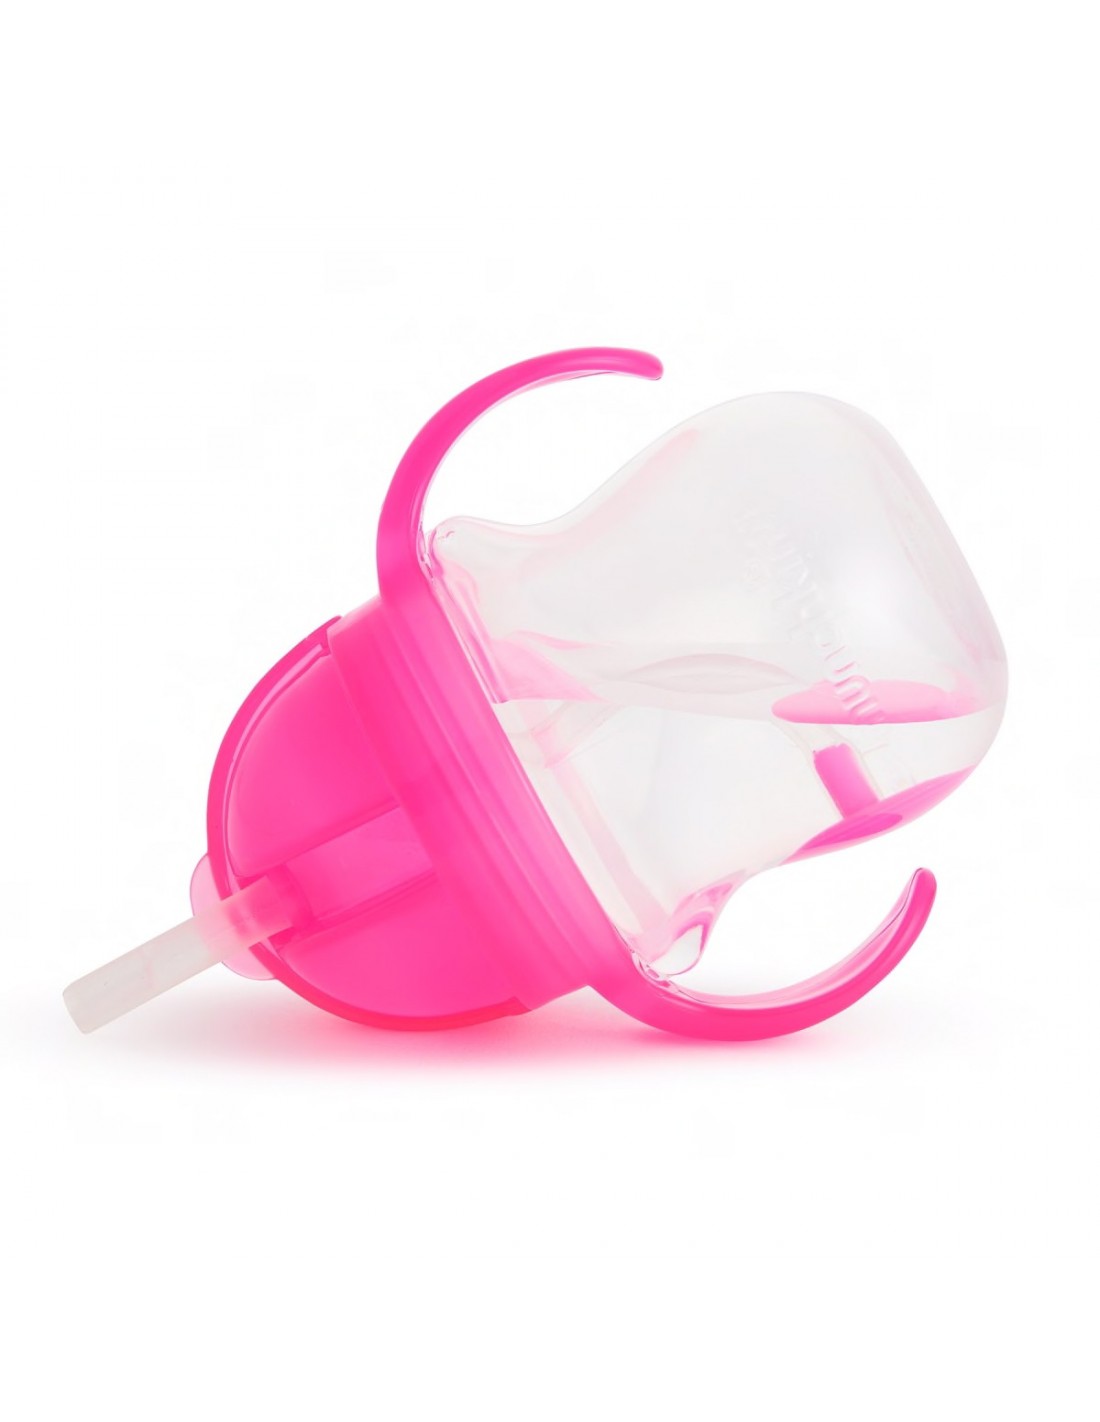 munchkin-tip-sip-cup-pink-2-littlebox.gr